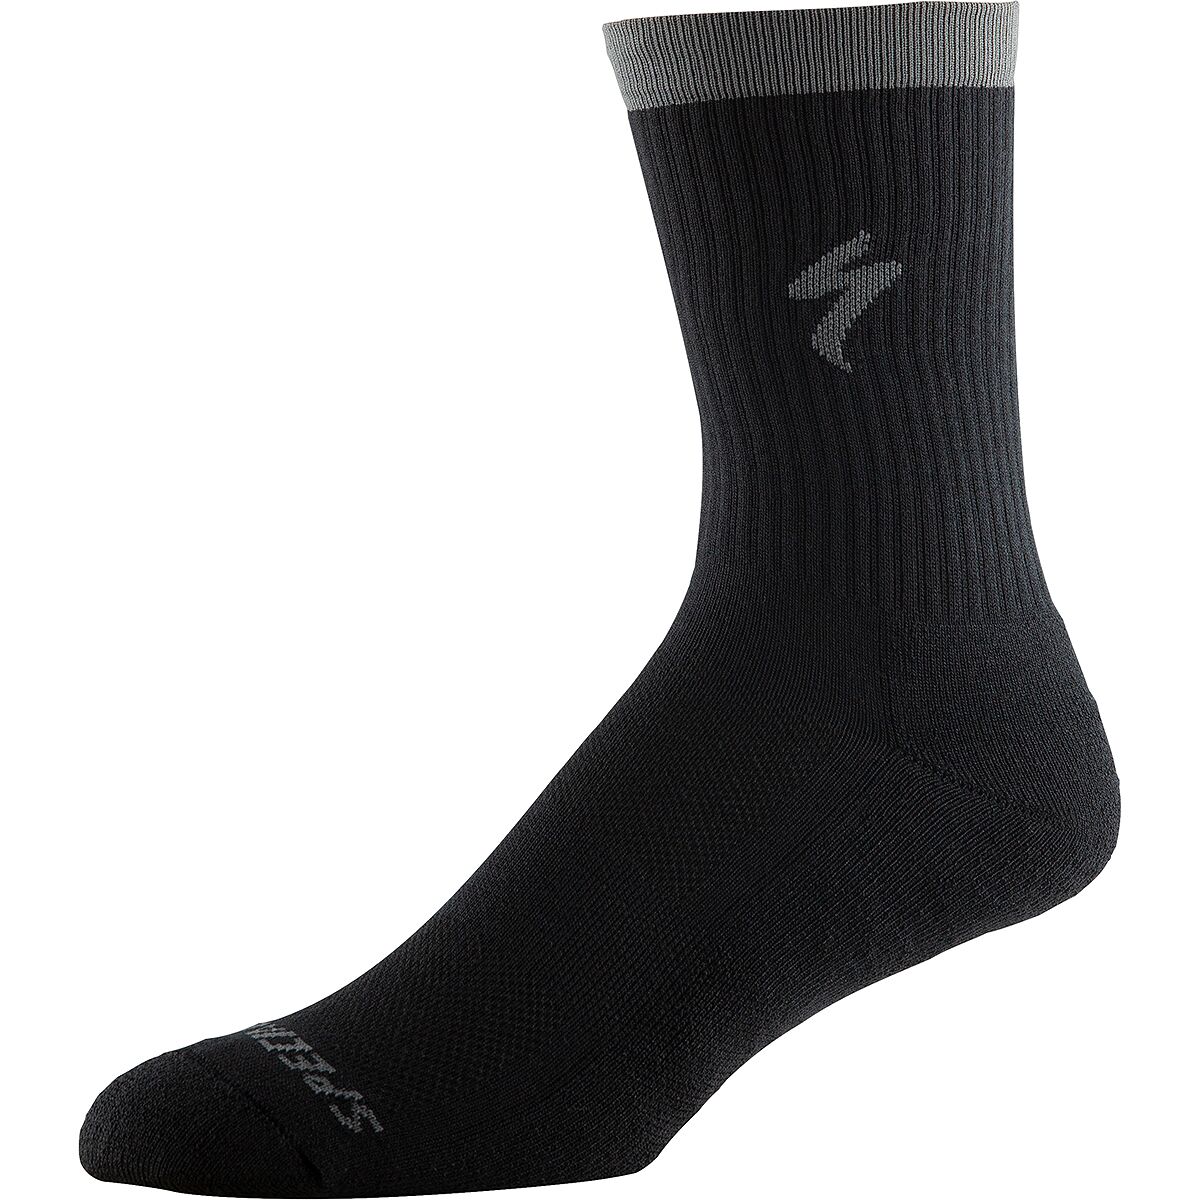 Specialized Techno MTB Tall Sock Black, XL - Men's